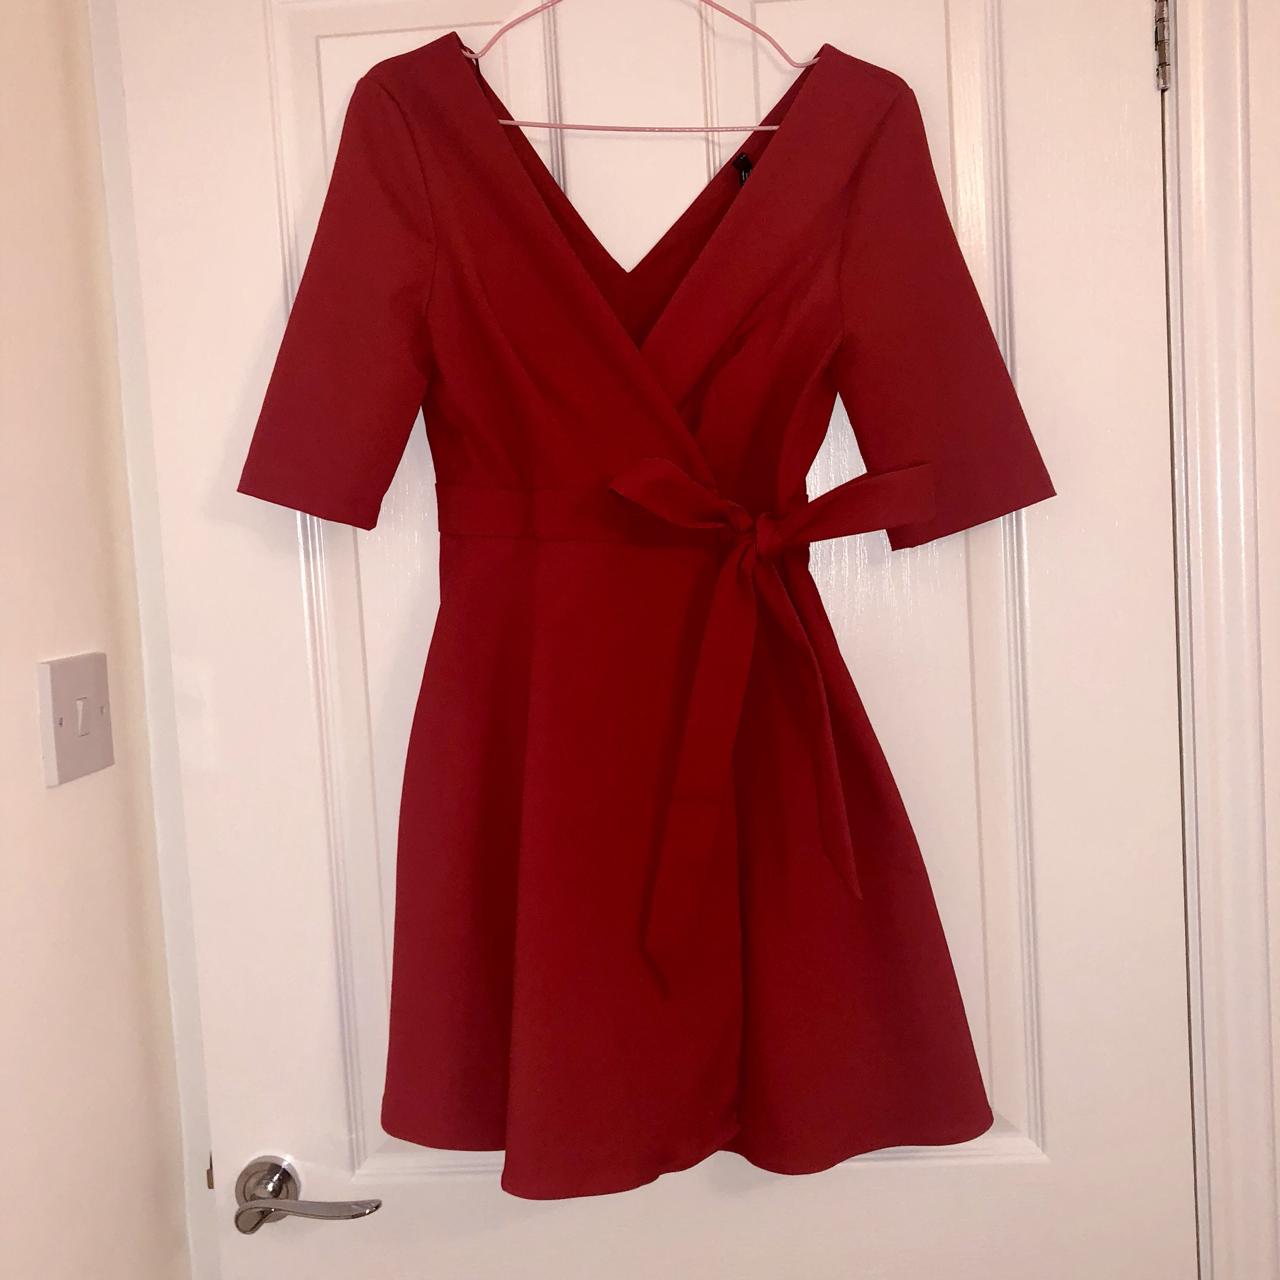 Zara red wrap dress, in size XS ...